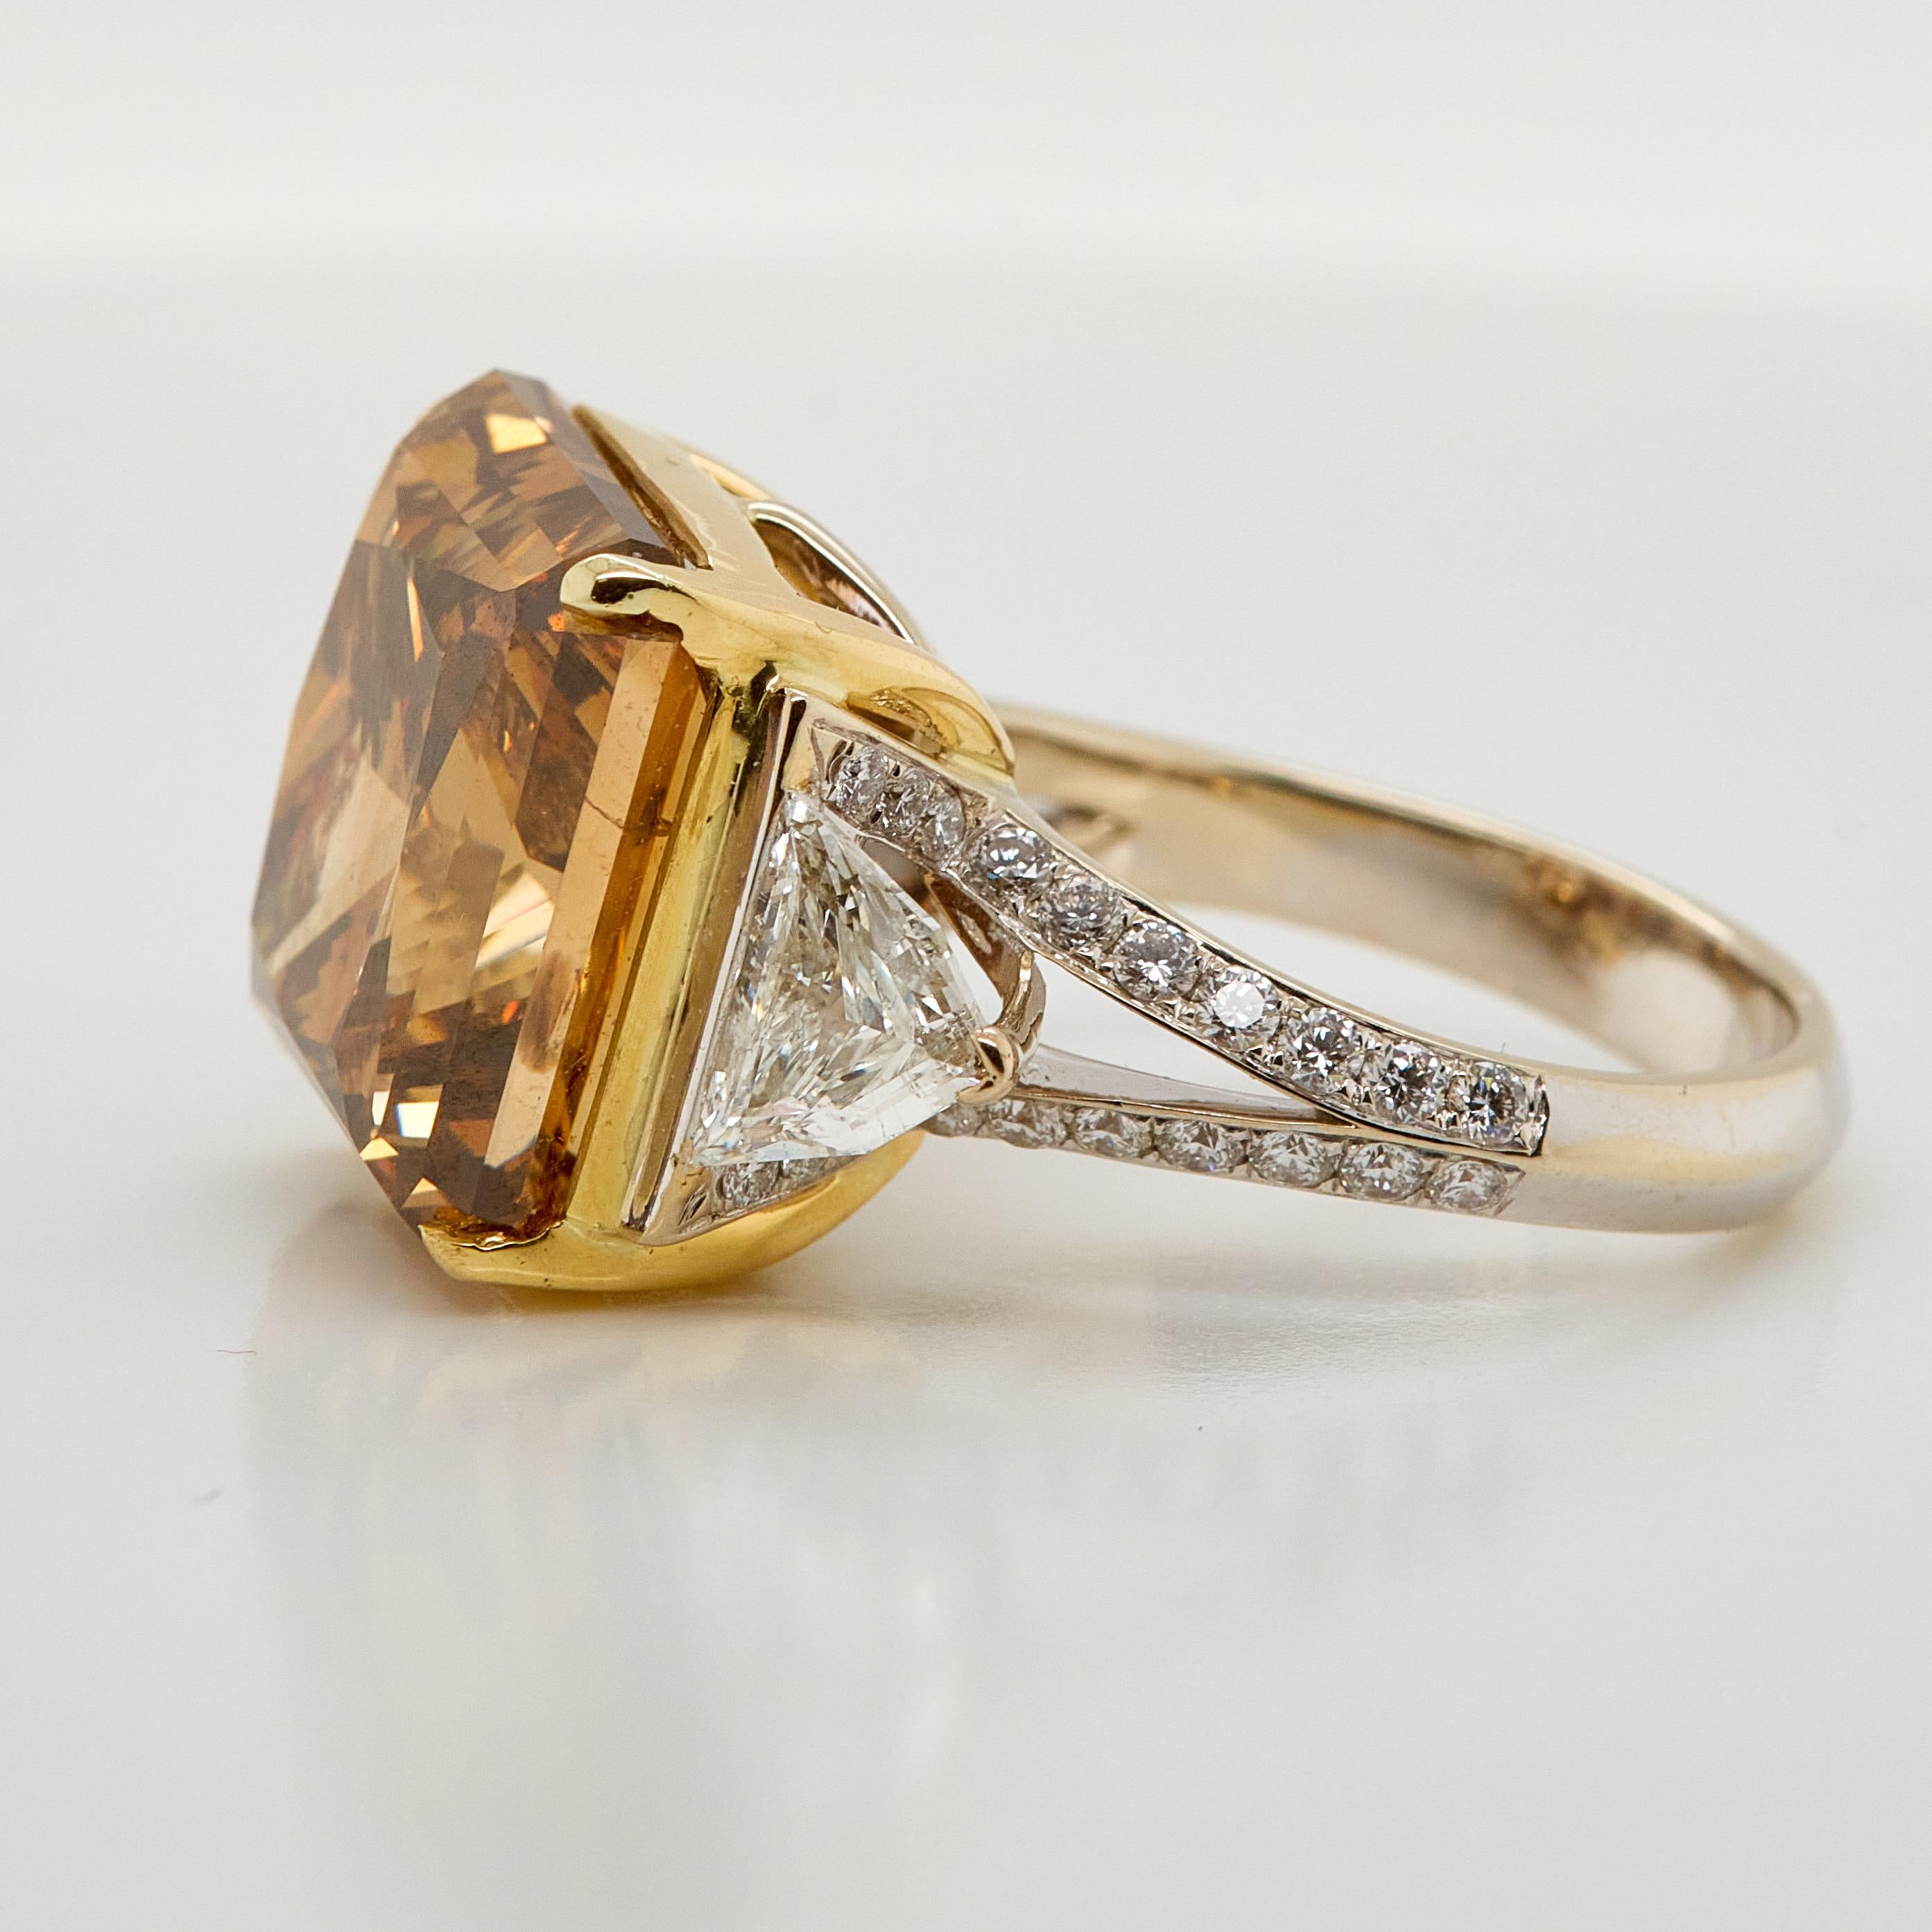 Absolut atemberaubender Verlobungsring mit einem GIA-zertifizierten 20,59 Karat Fancy Deep Brown Orange Diamant im Rechteckschliff. 
Die Größe des Mittelsteins macht diesen Ring zu einem echten Hingucker. Flankiert von zwei Diamanten im